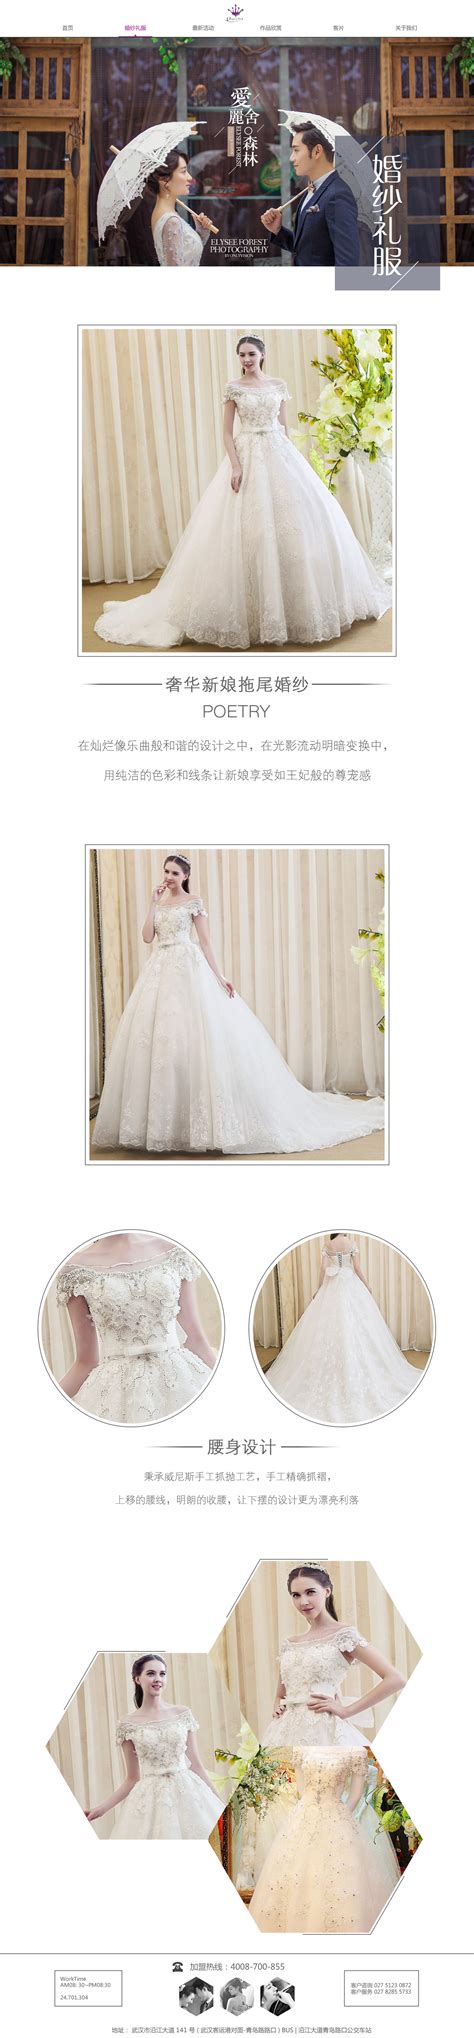 婚纱摄影网站设计案例